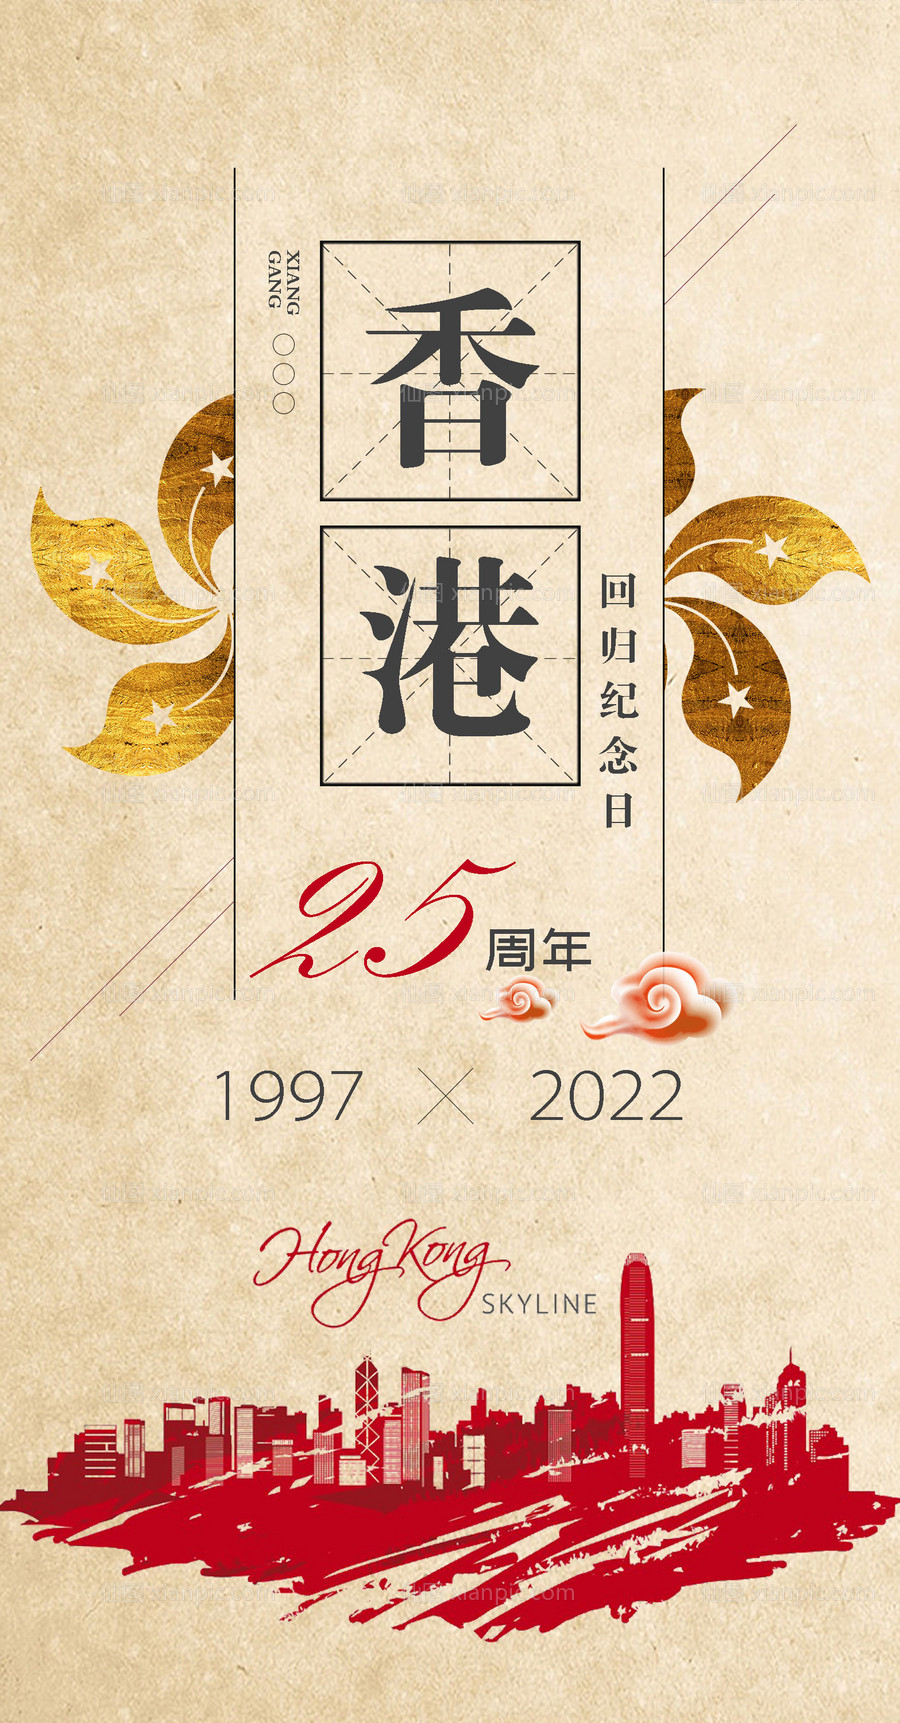 素材乐-香港回归25周年海报